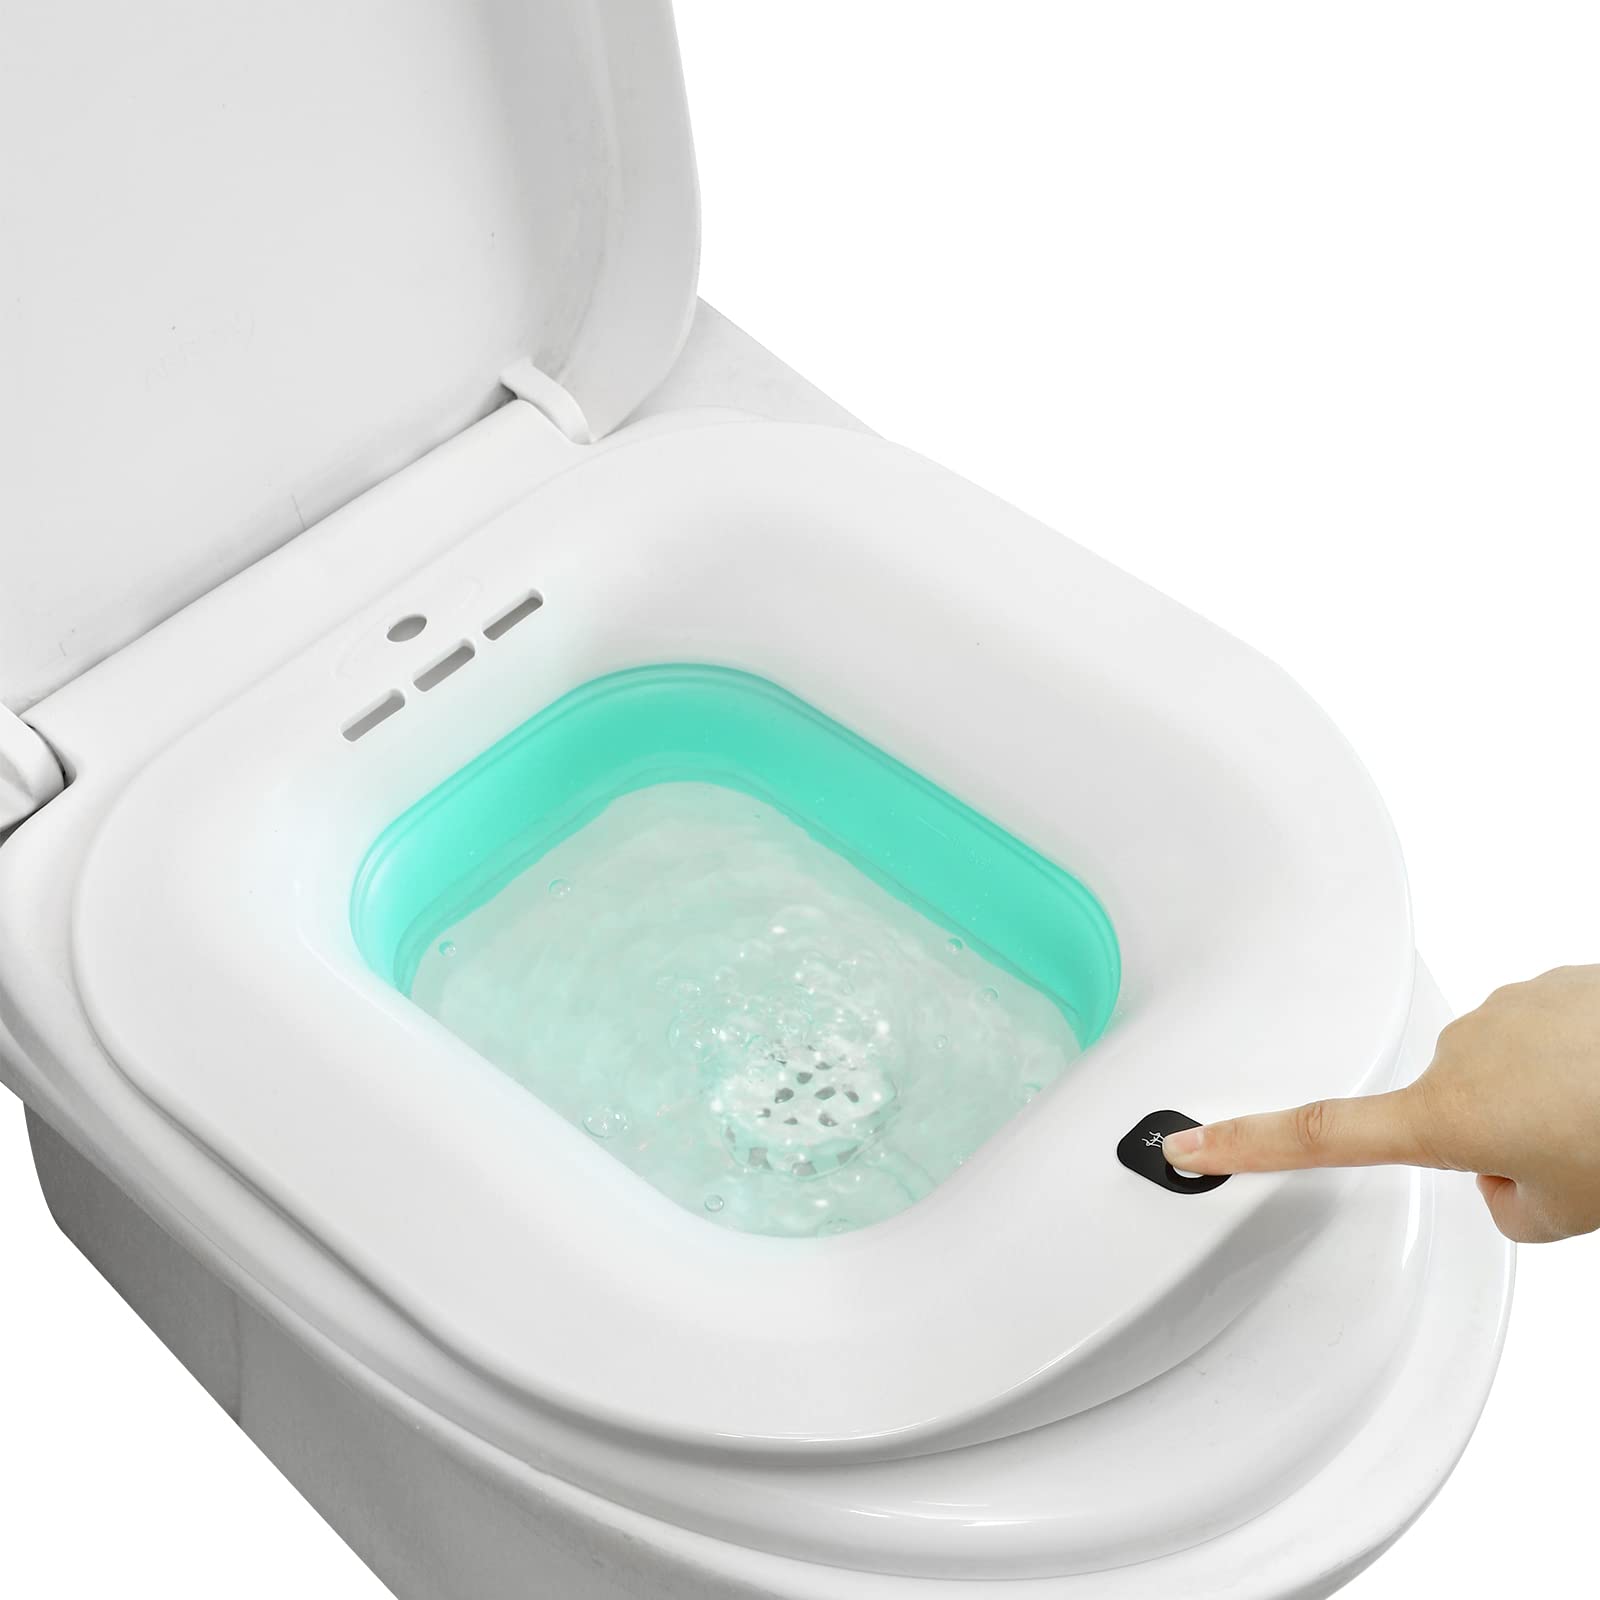 Electric Toilet Seat-Electric Sitz Bath for Hemorrhoids，Foldable Sitz Baths for Postpartum Care,Postpartum Care Steam Seat，Suitable for Pregnant Women, Elderly (Bubble Mode)